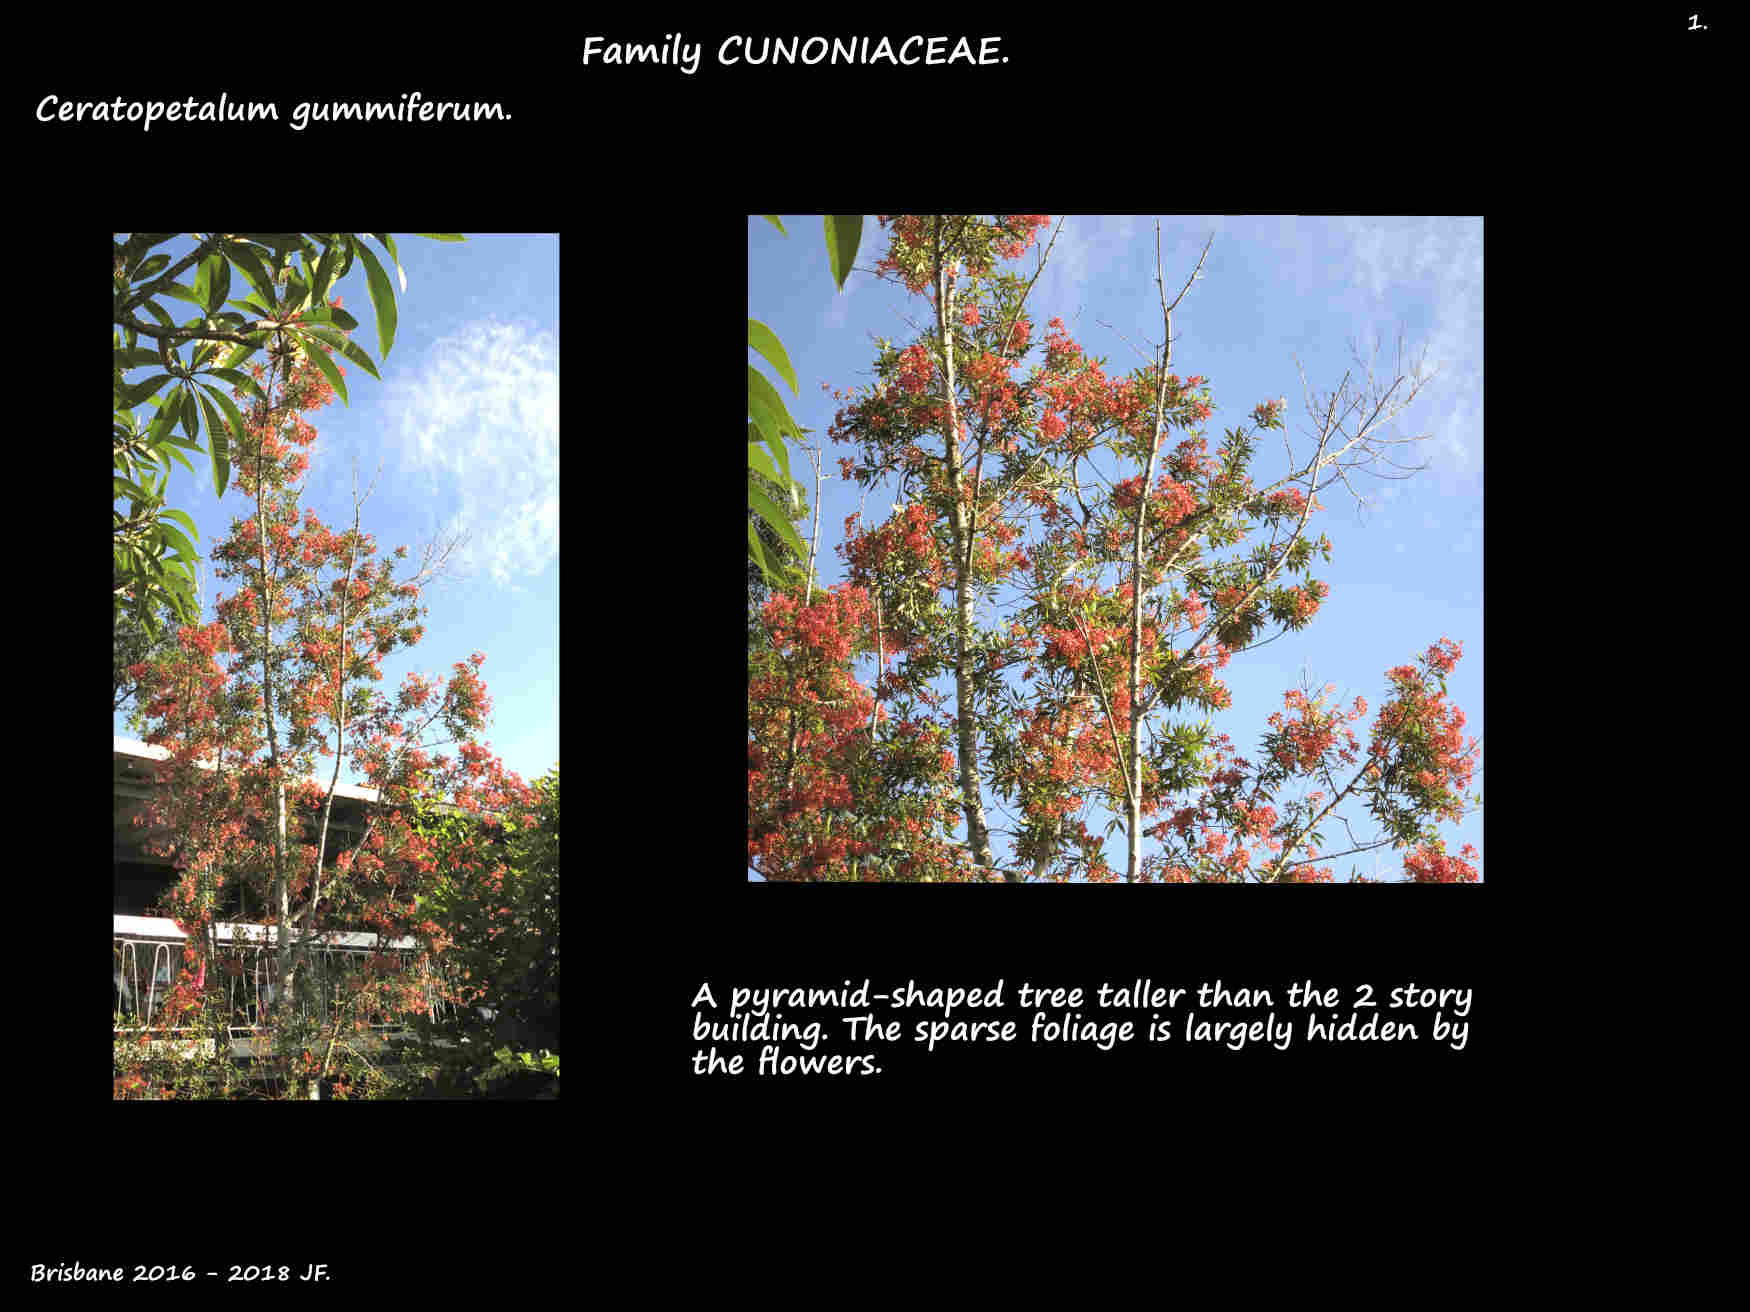 1 A Ceratopetalum gummiferum tree in flower